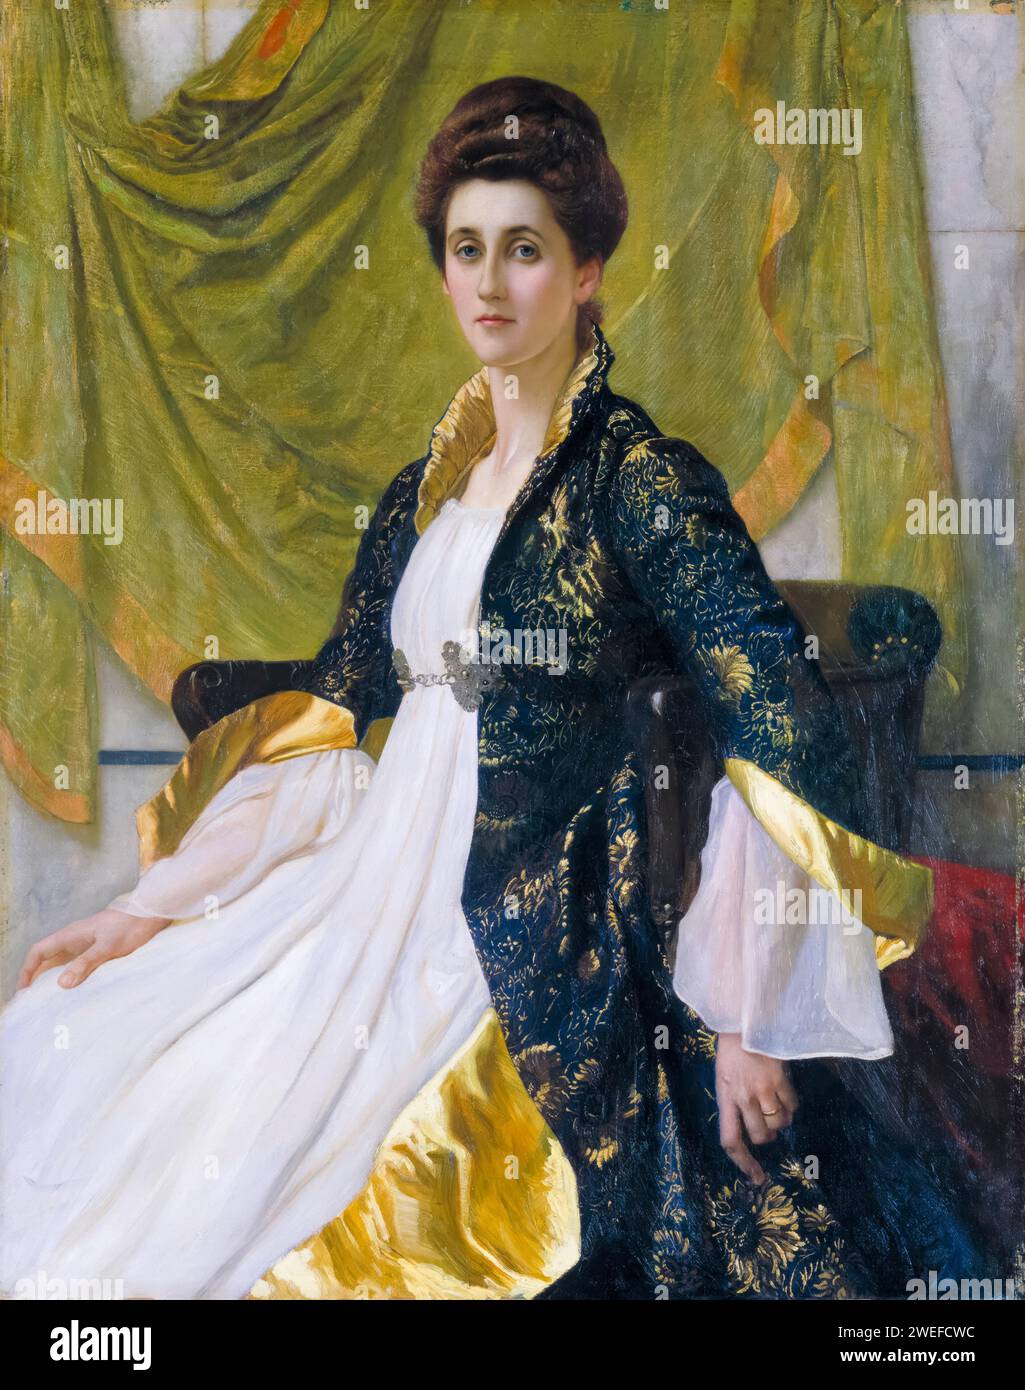 Mme Ernest Moon (Emma Moon), portrait à l'huile sur toile de William Blake Richmond, 1888 Banque D'Images